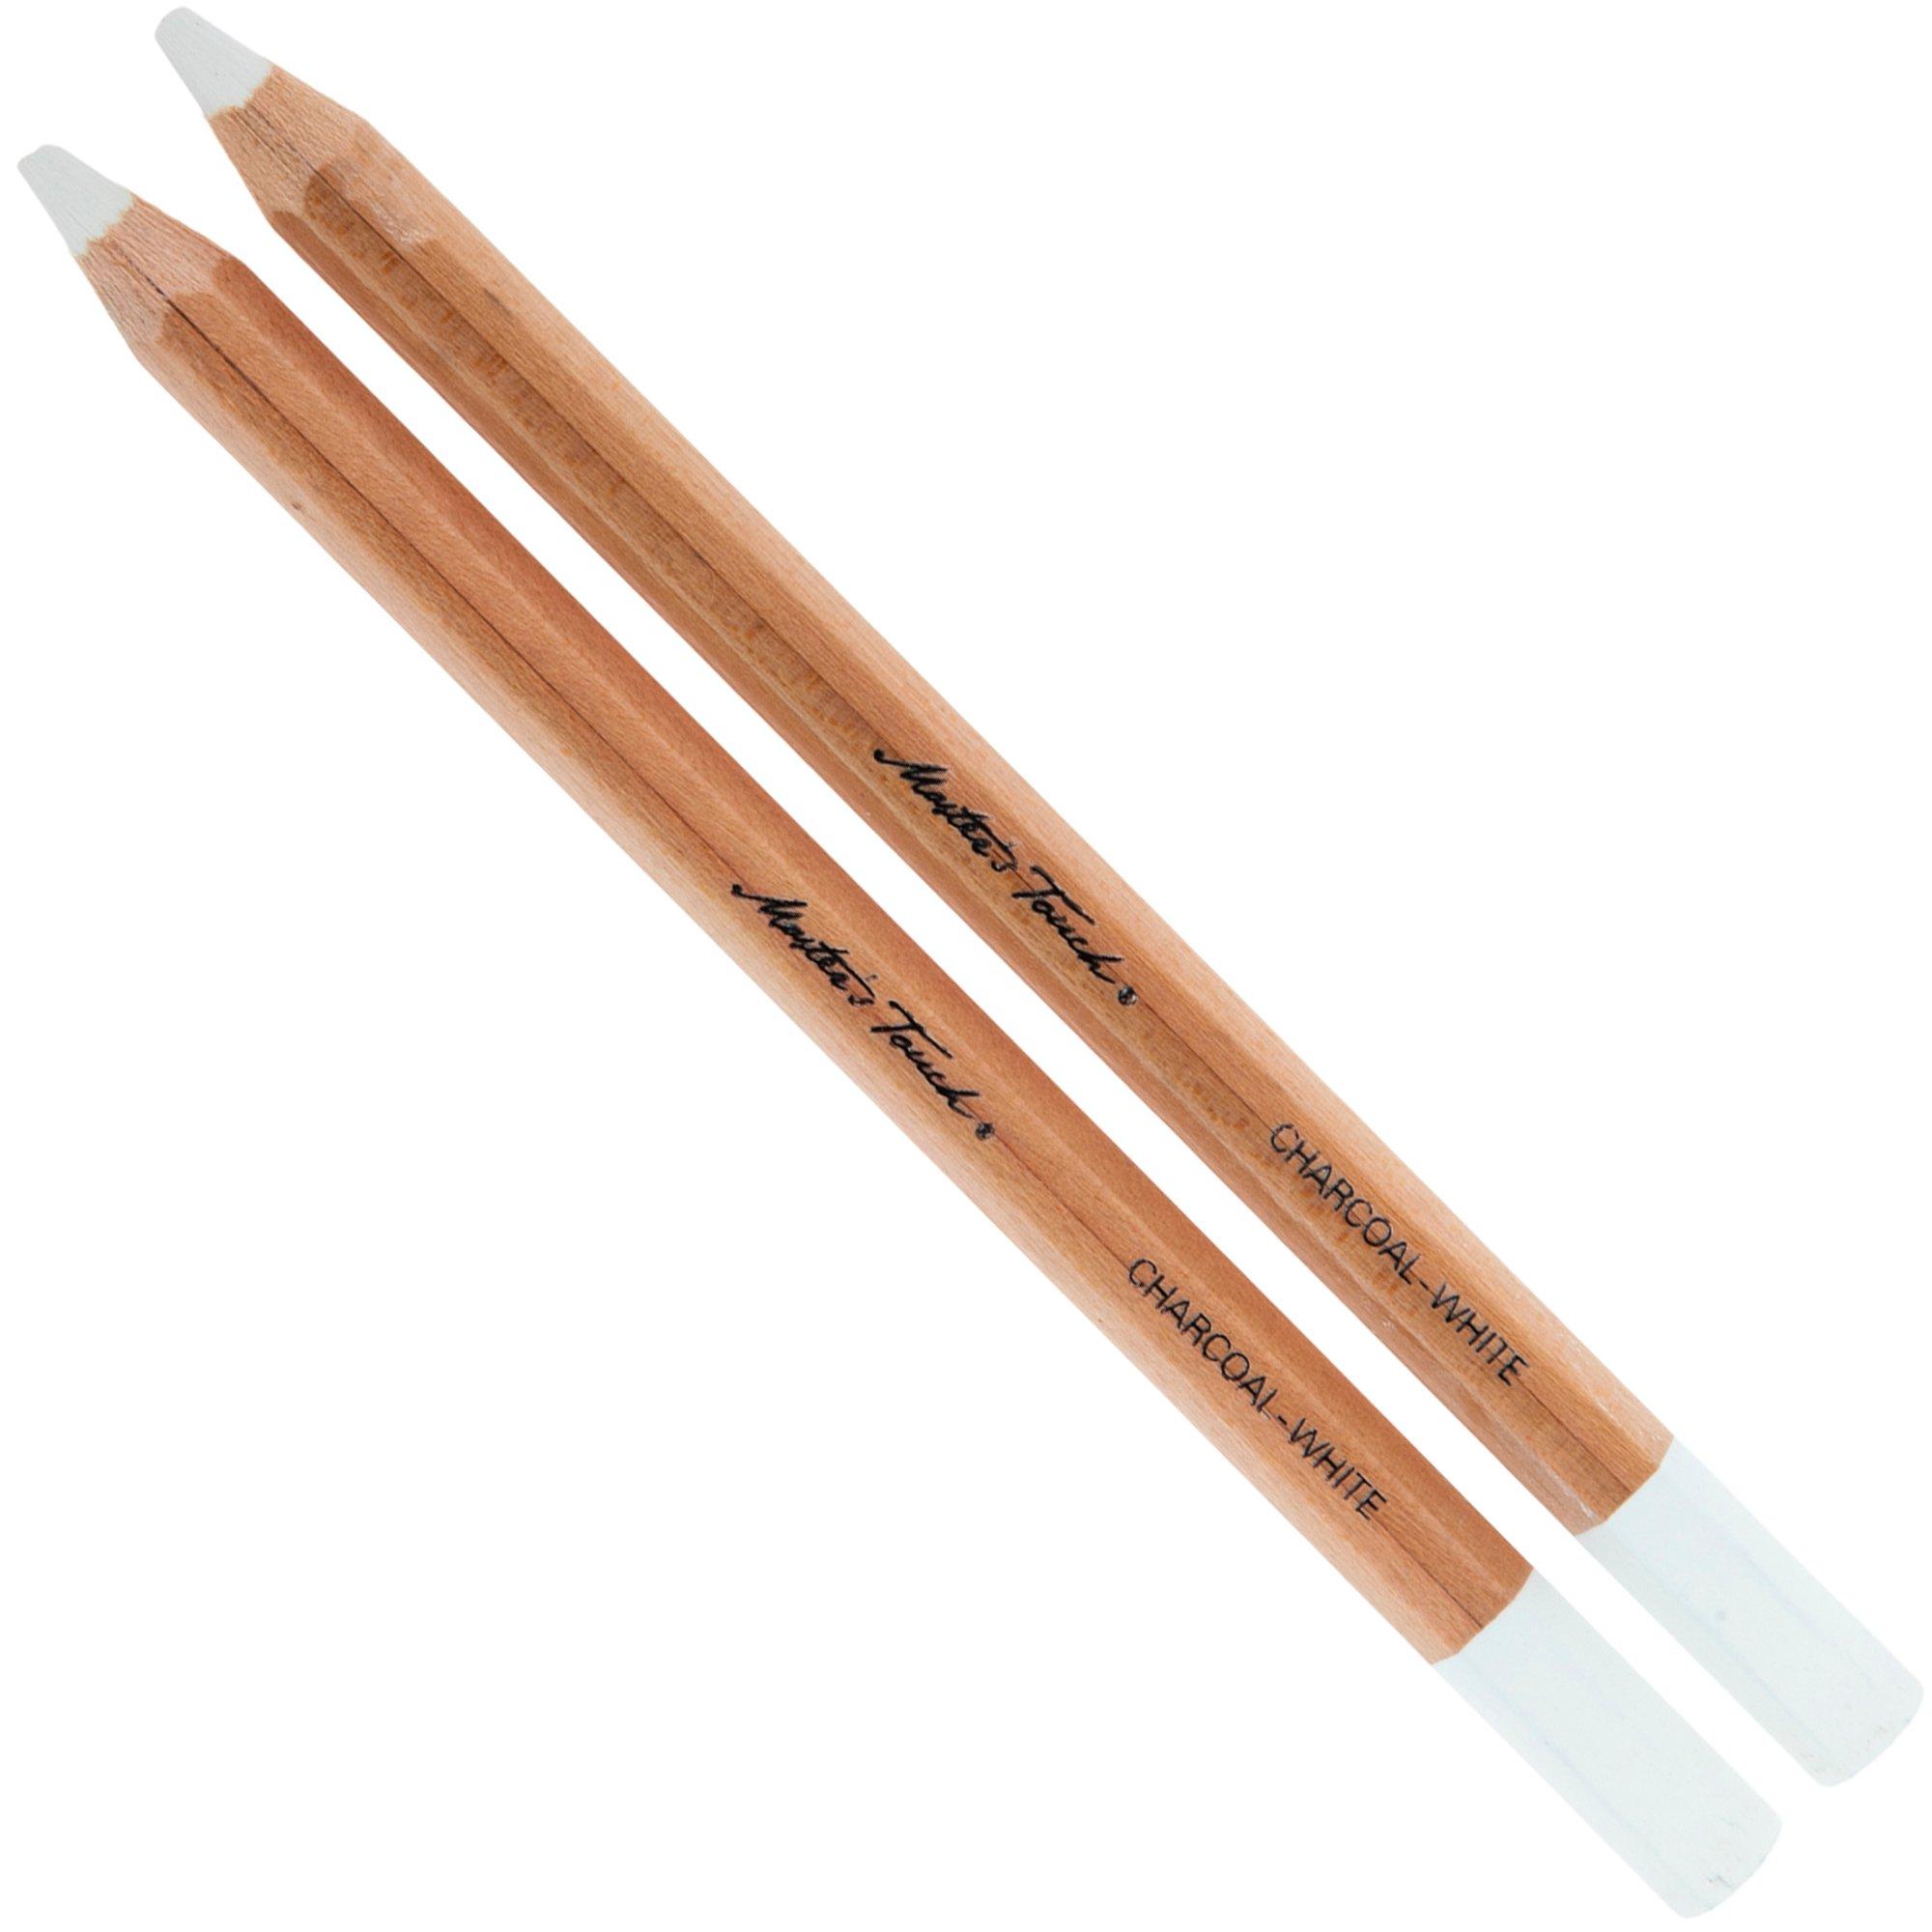 Premium Sketching Pencils & Accessories